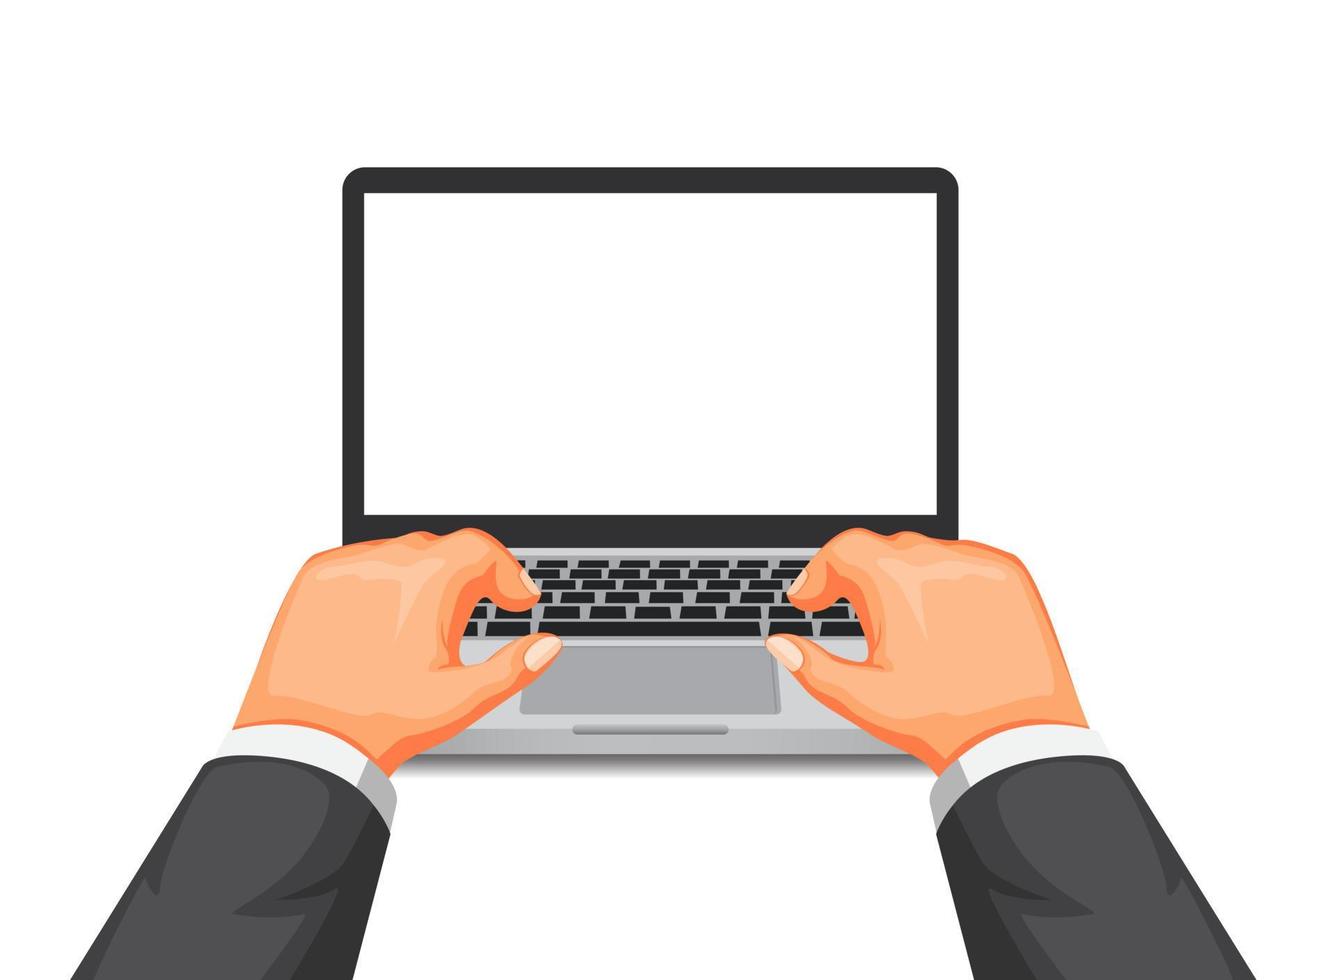 digitando a mano sul computer portatile, lavorando o studiando utilizzando il concetto di simbolo del computer nel vettore dell'illustrazione del fumetto isolato nel fondo bianco